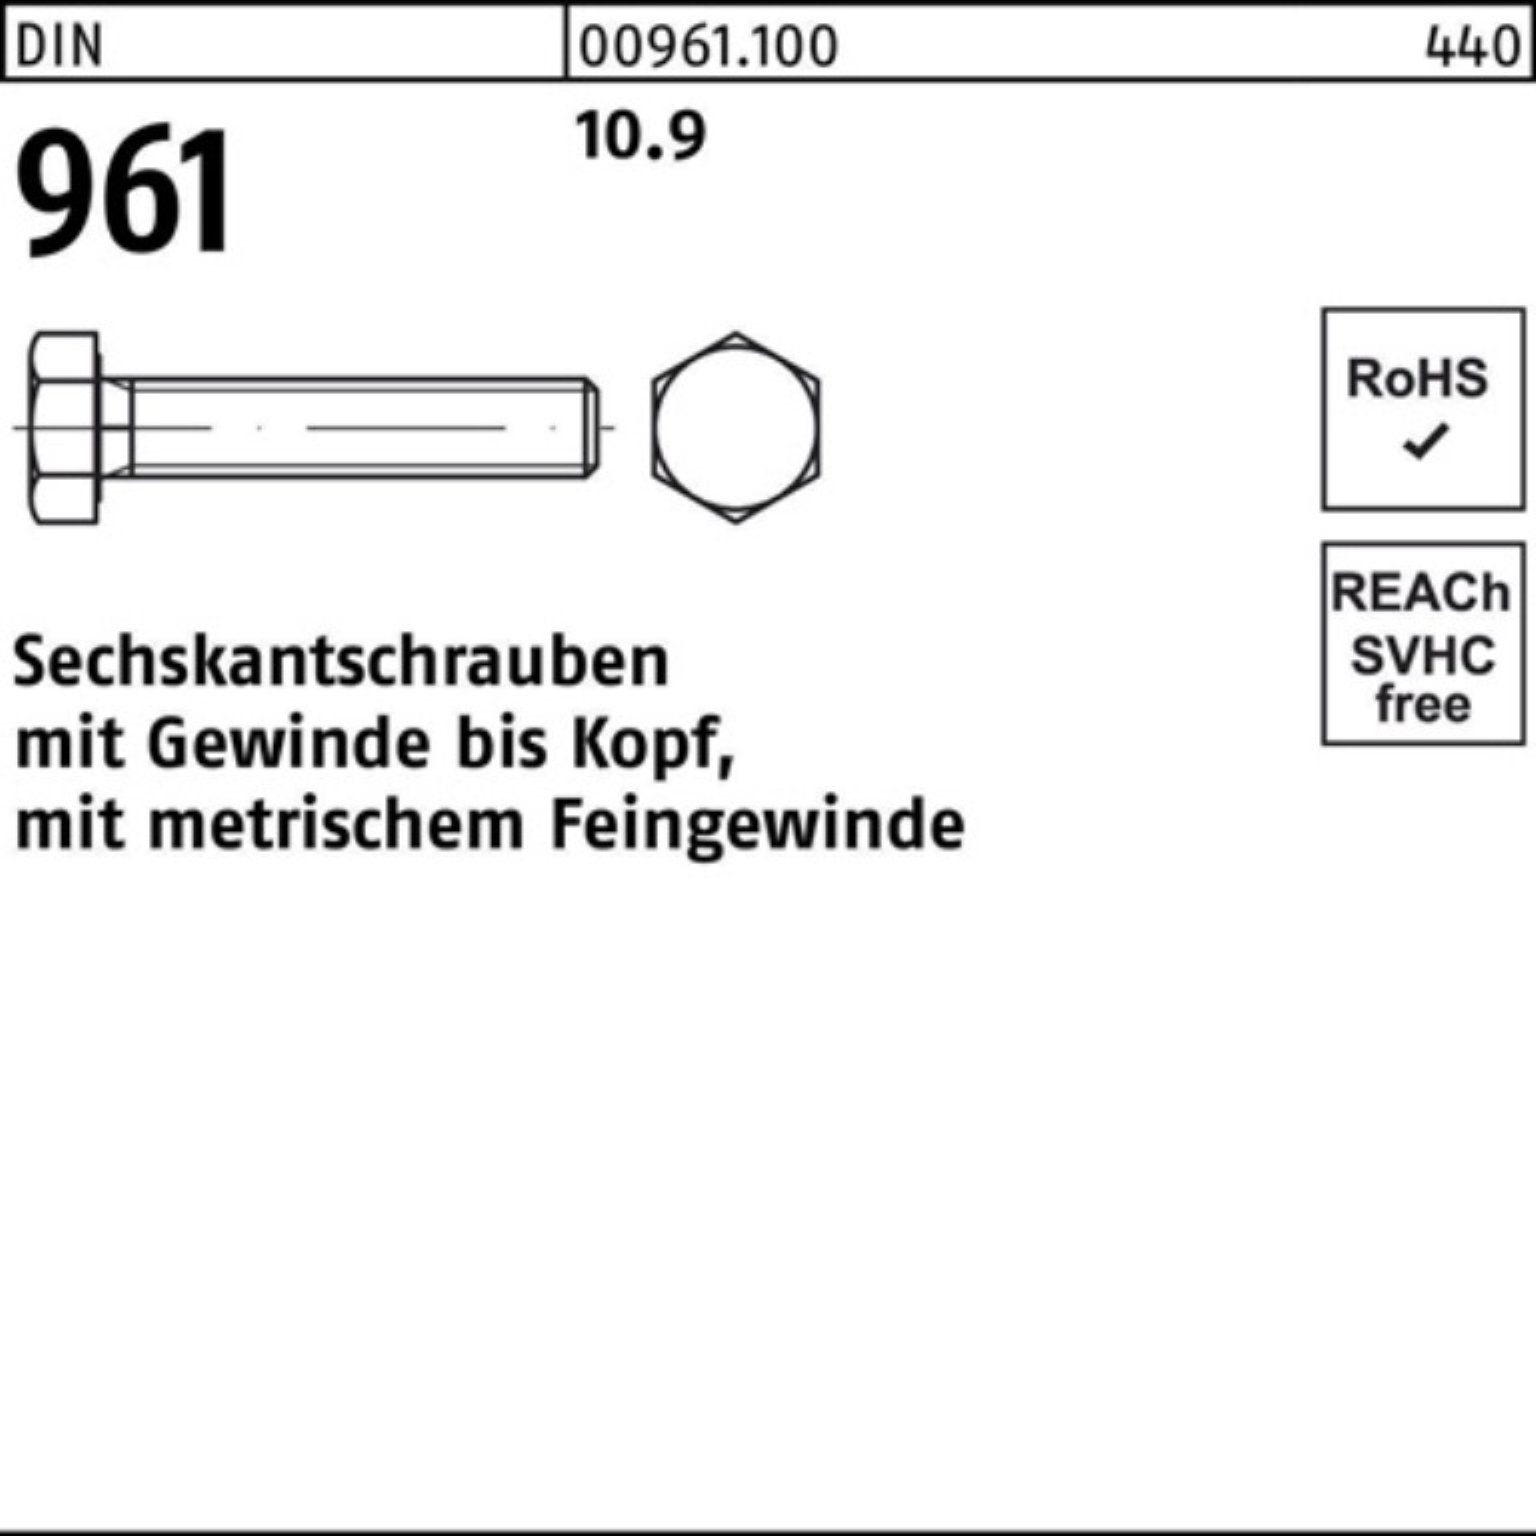 Sechskantschraube Stück 10.9 VG 25 Pack 961 100er Sechskantschraube DIN DIN Reyher M18x1,5x120